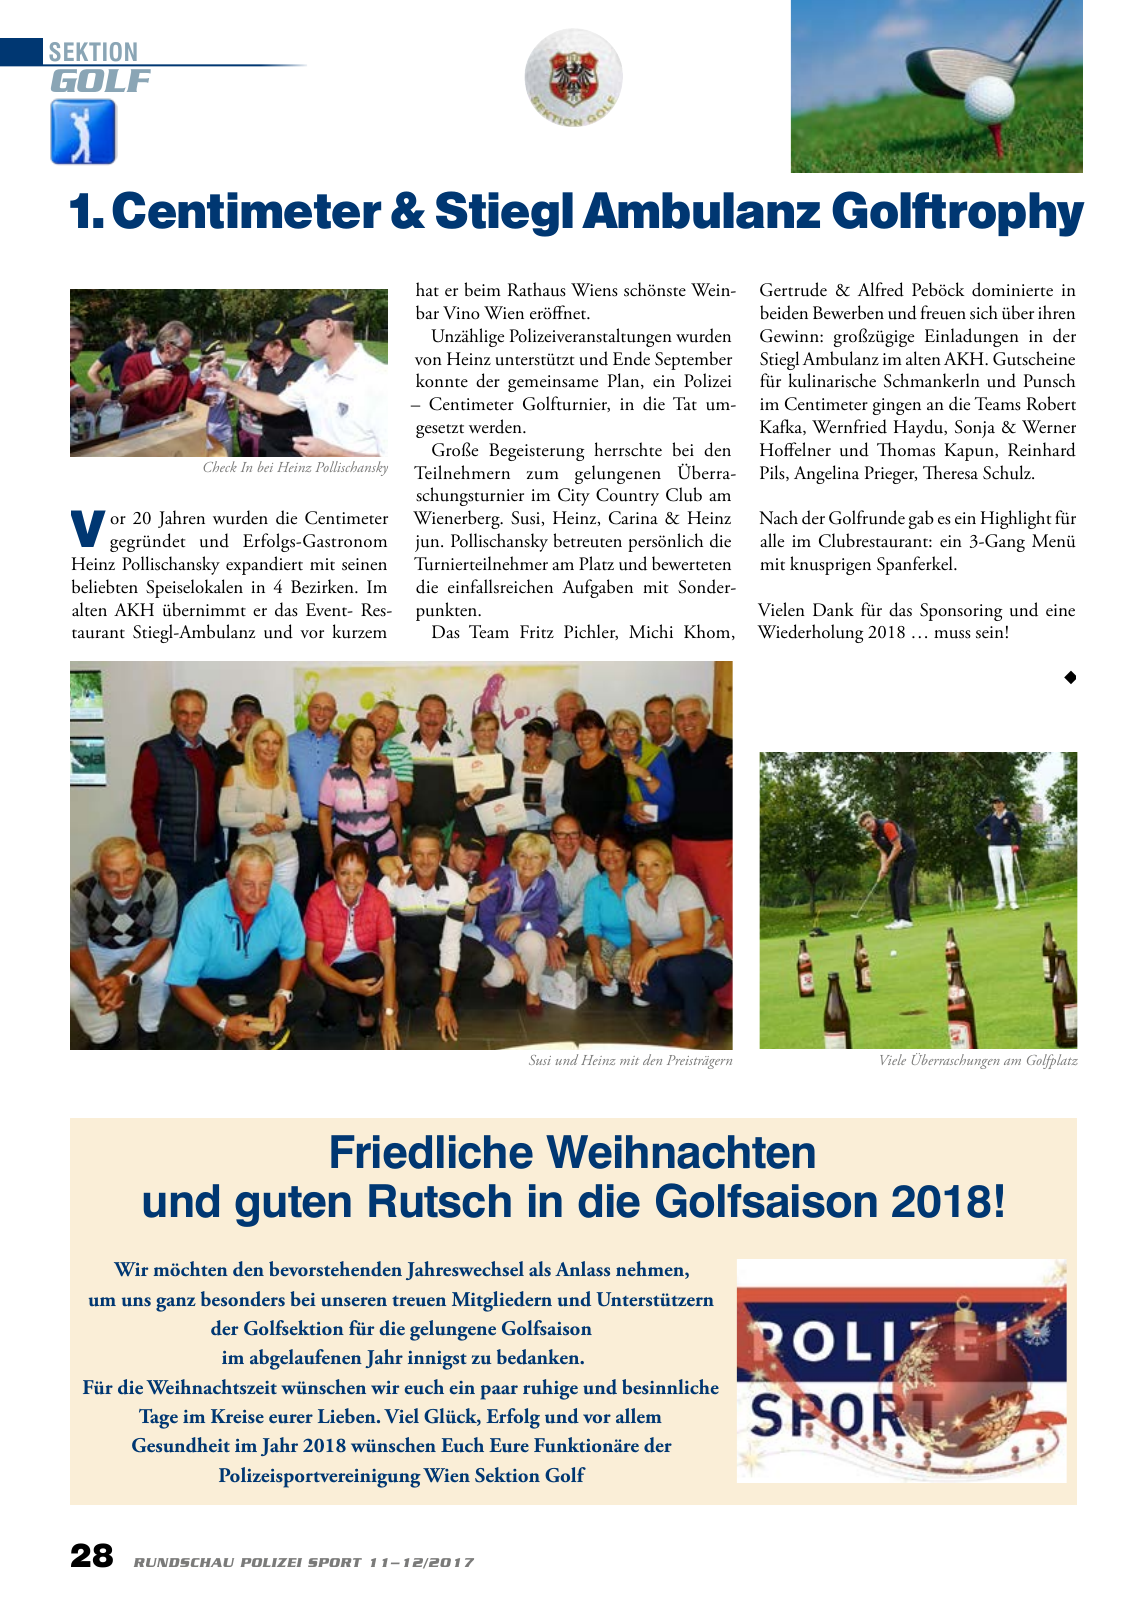 Vorschau Rundschau Polizei Sport 11-12/2017 Seite 28